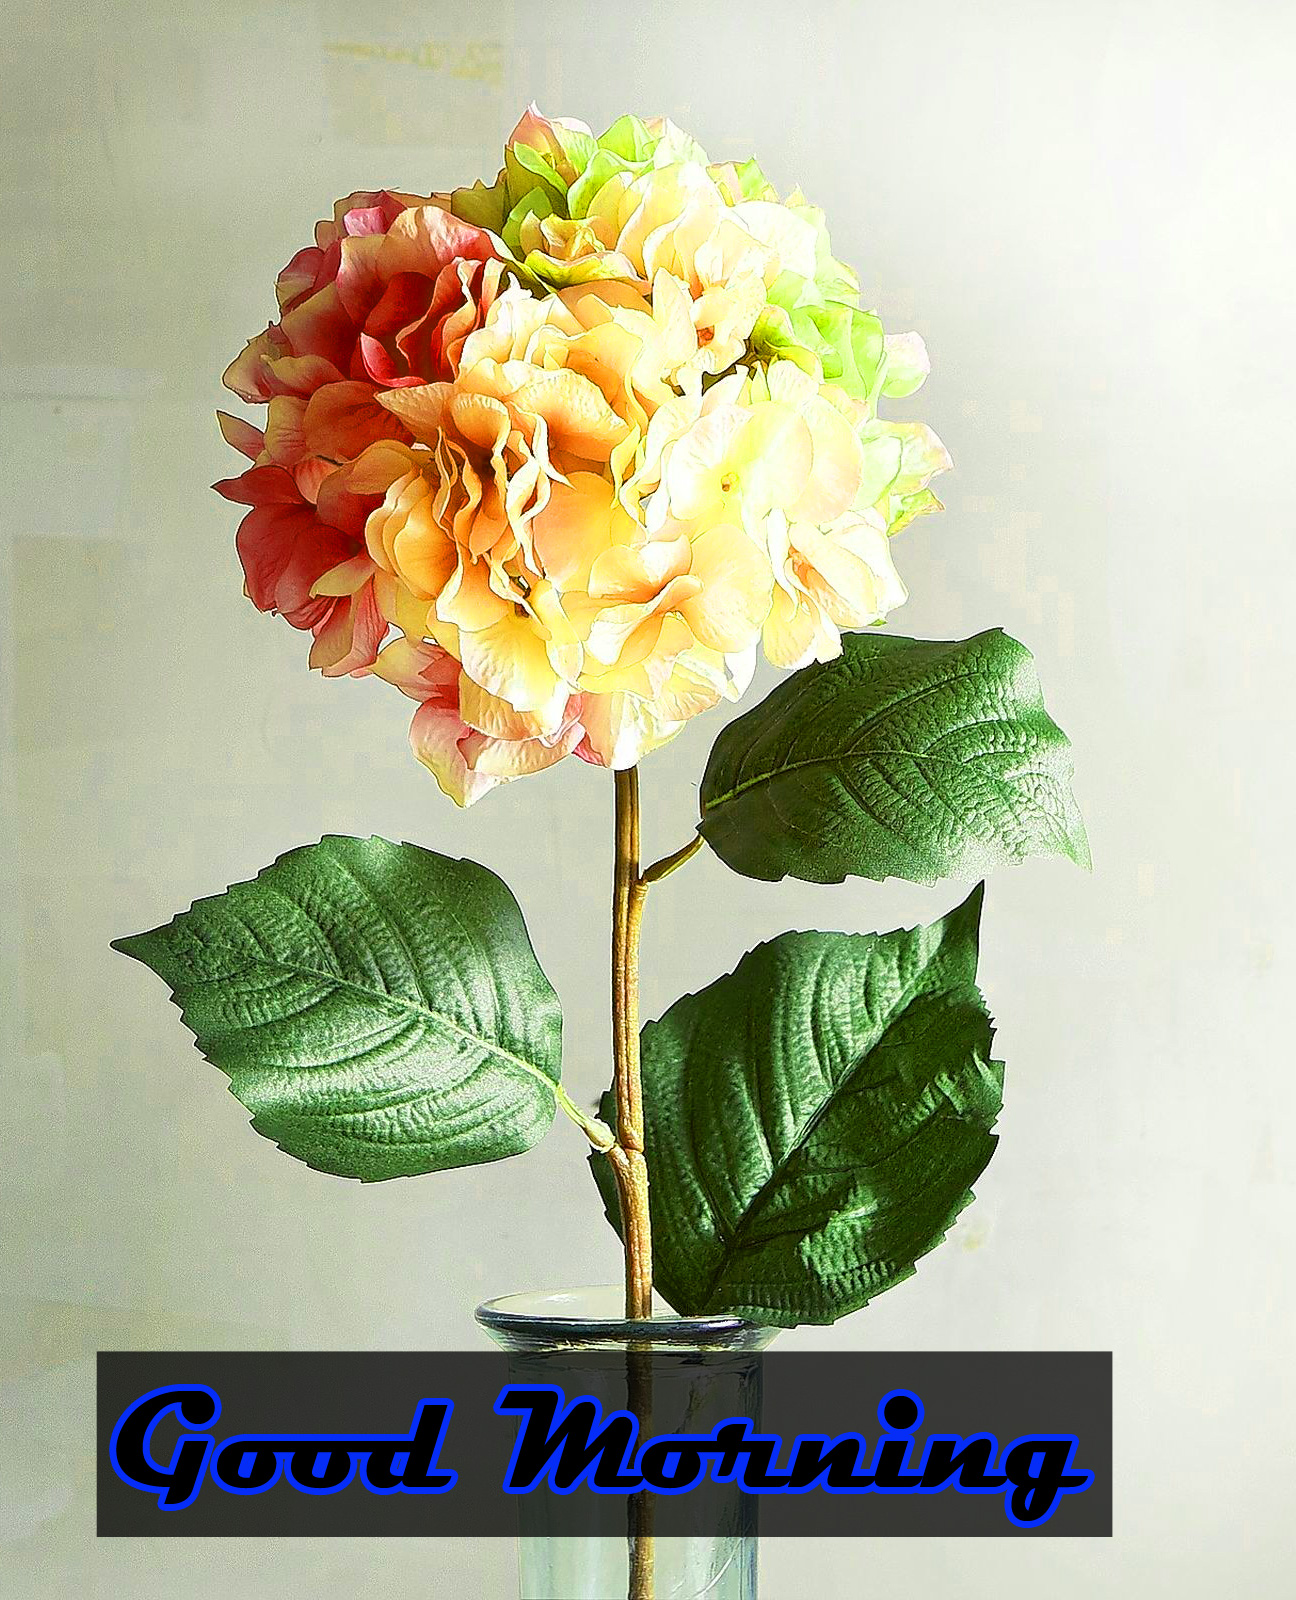 Flower Good Morning Images for Girlfriend